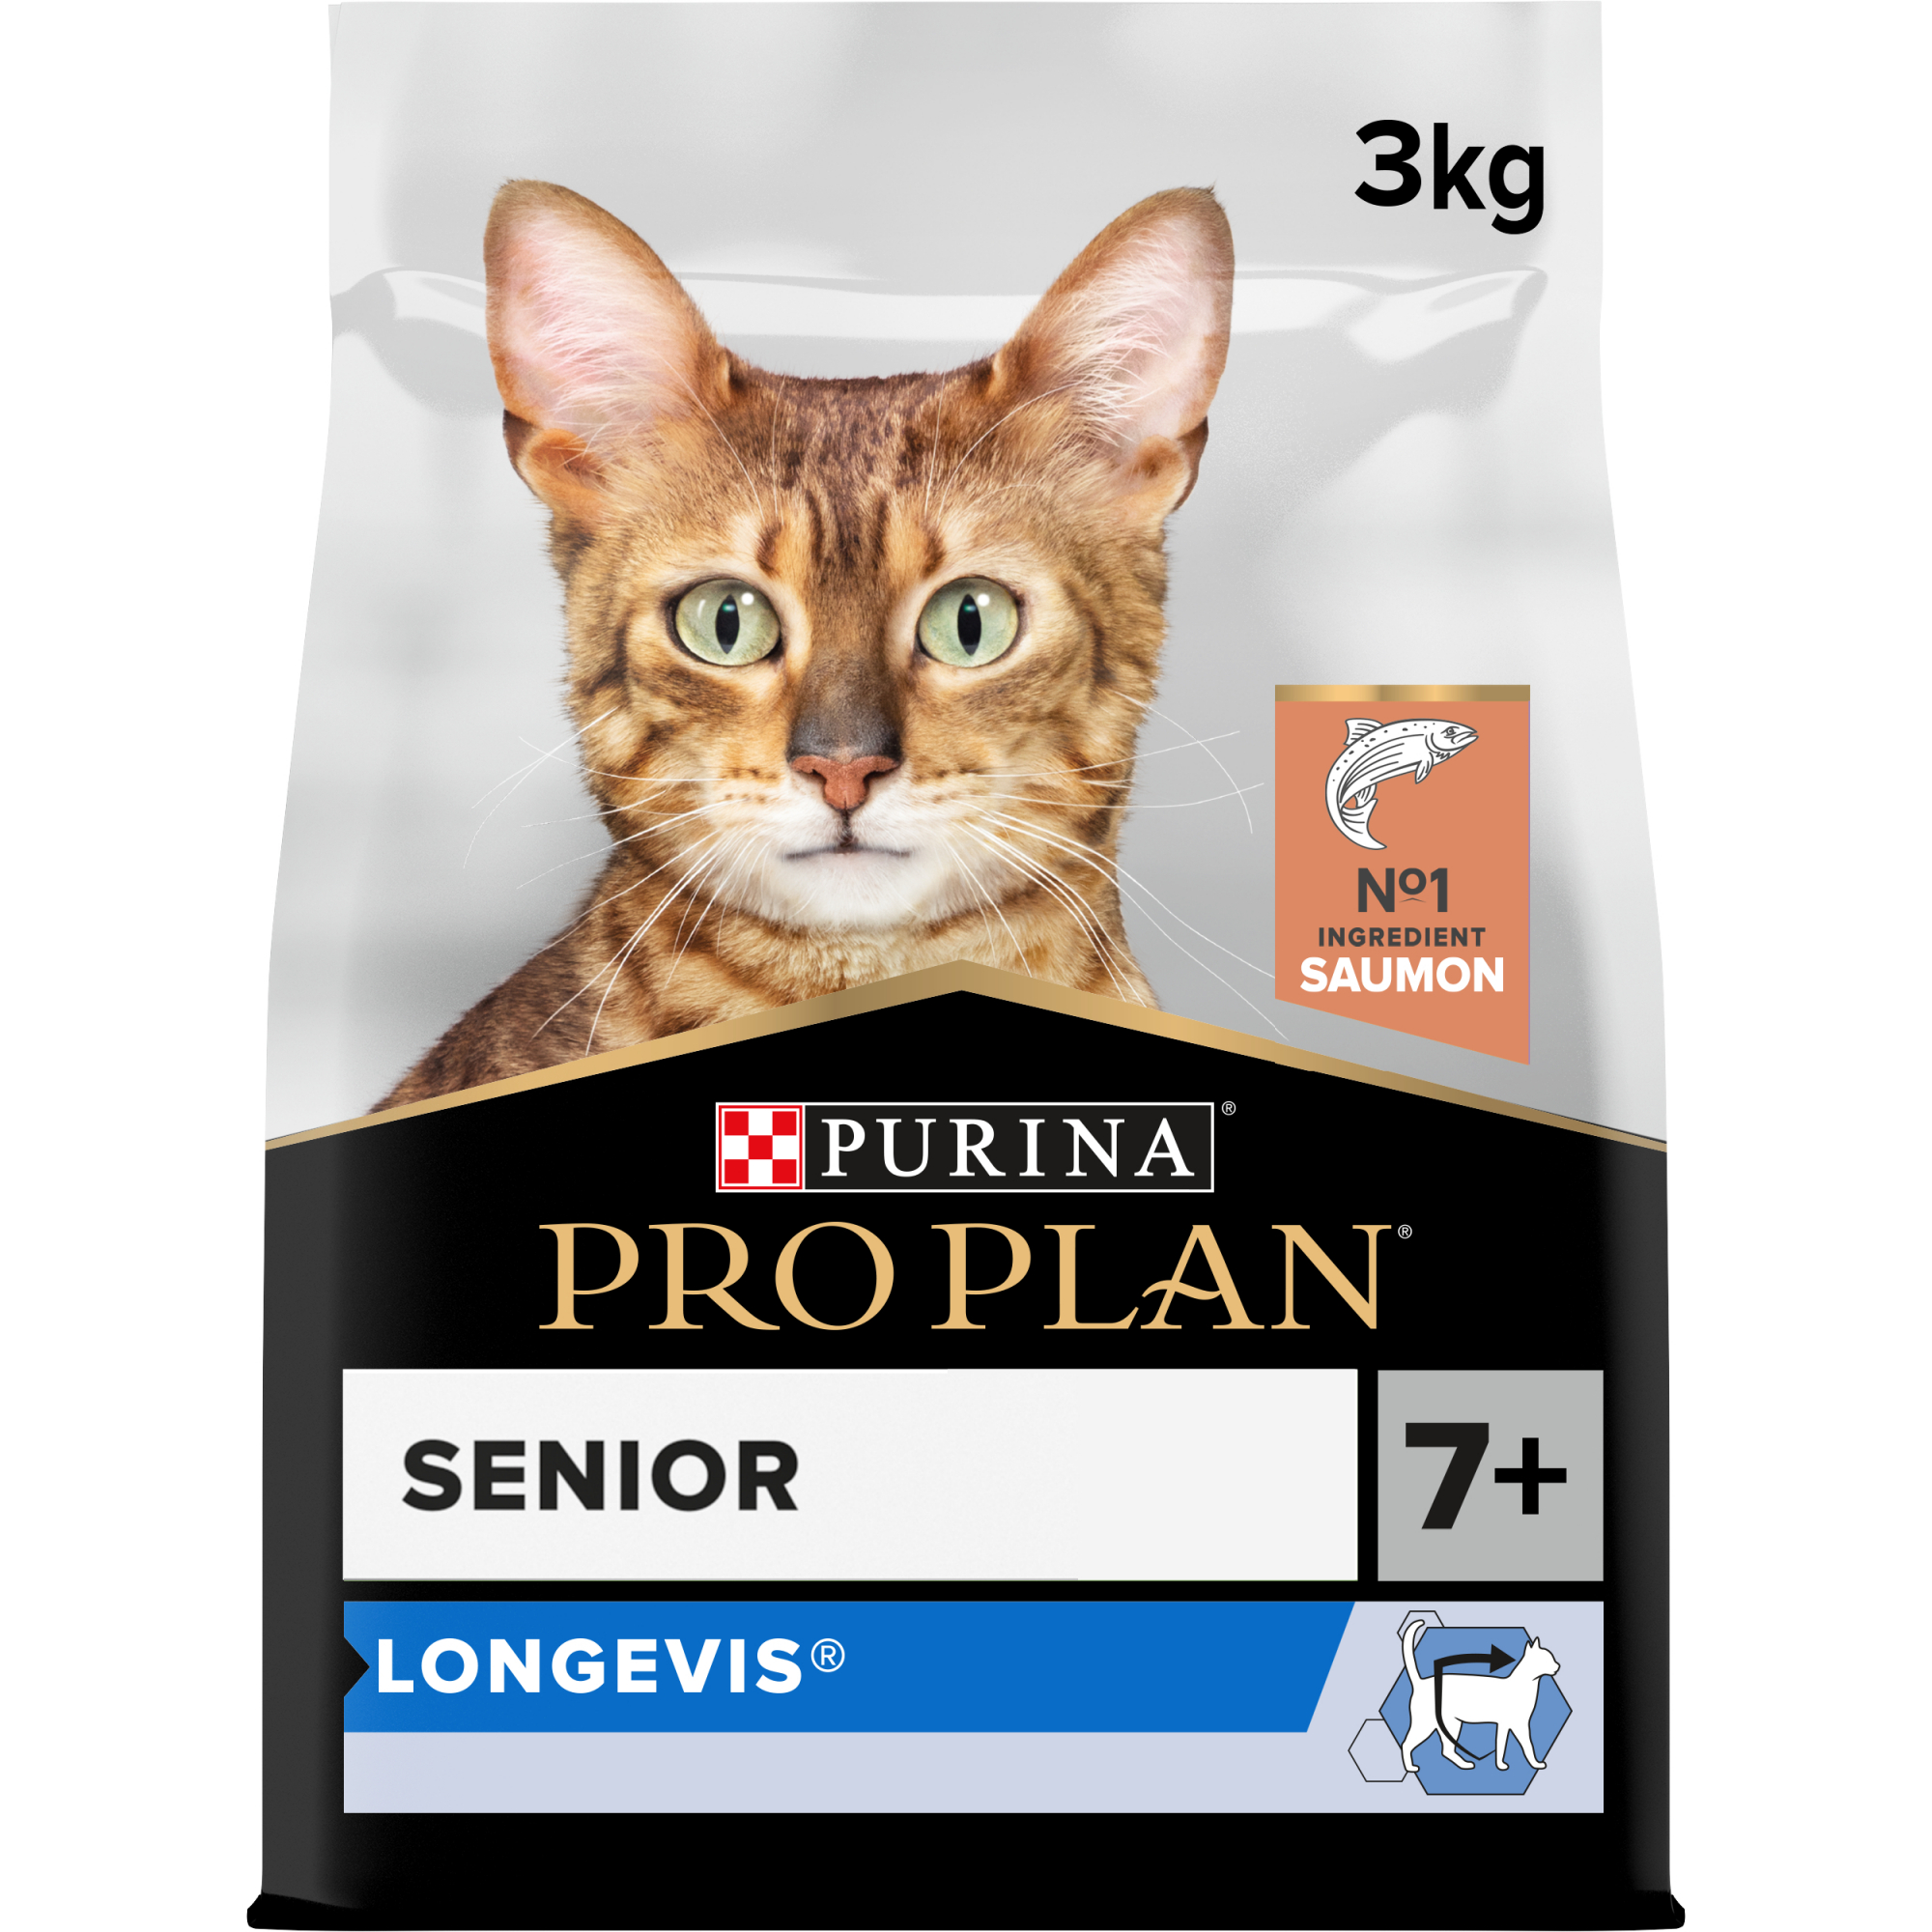 Pro Plan Original Senior Longevis